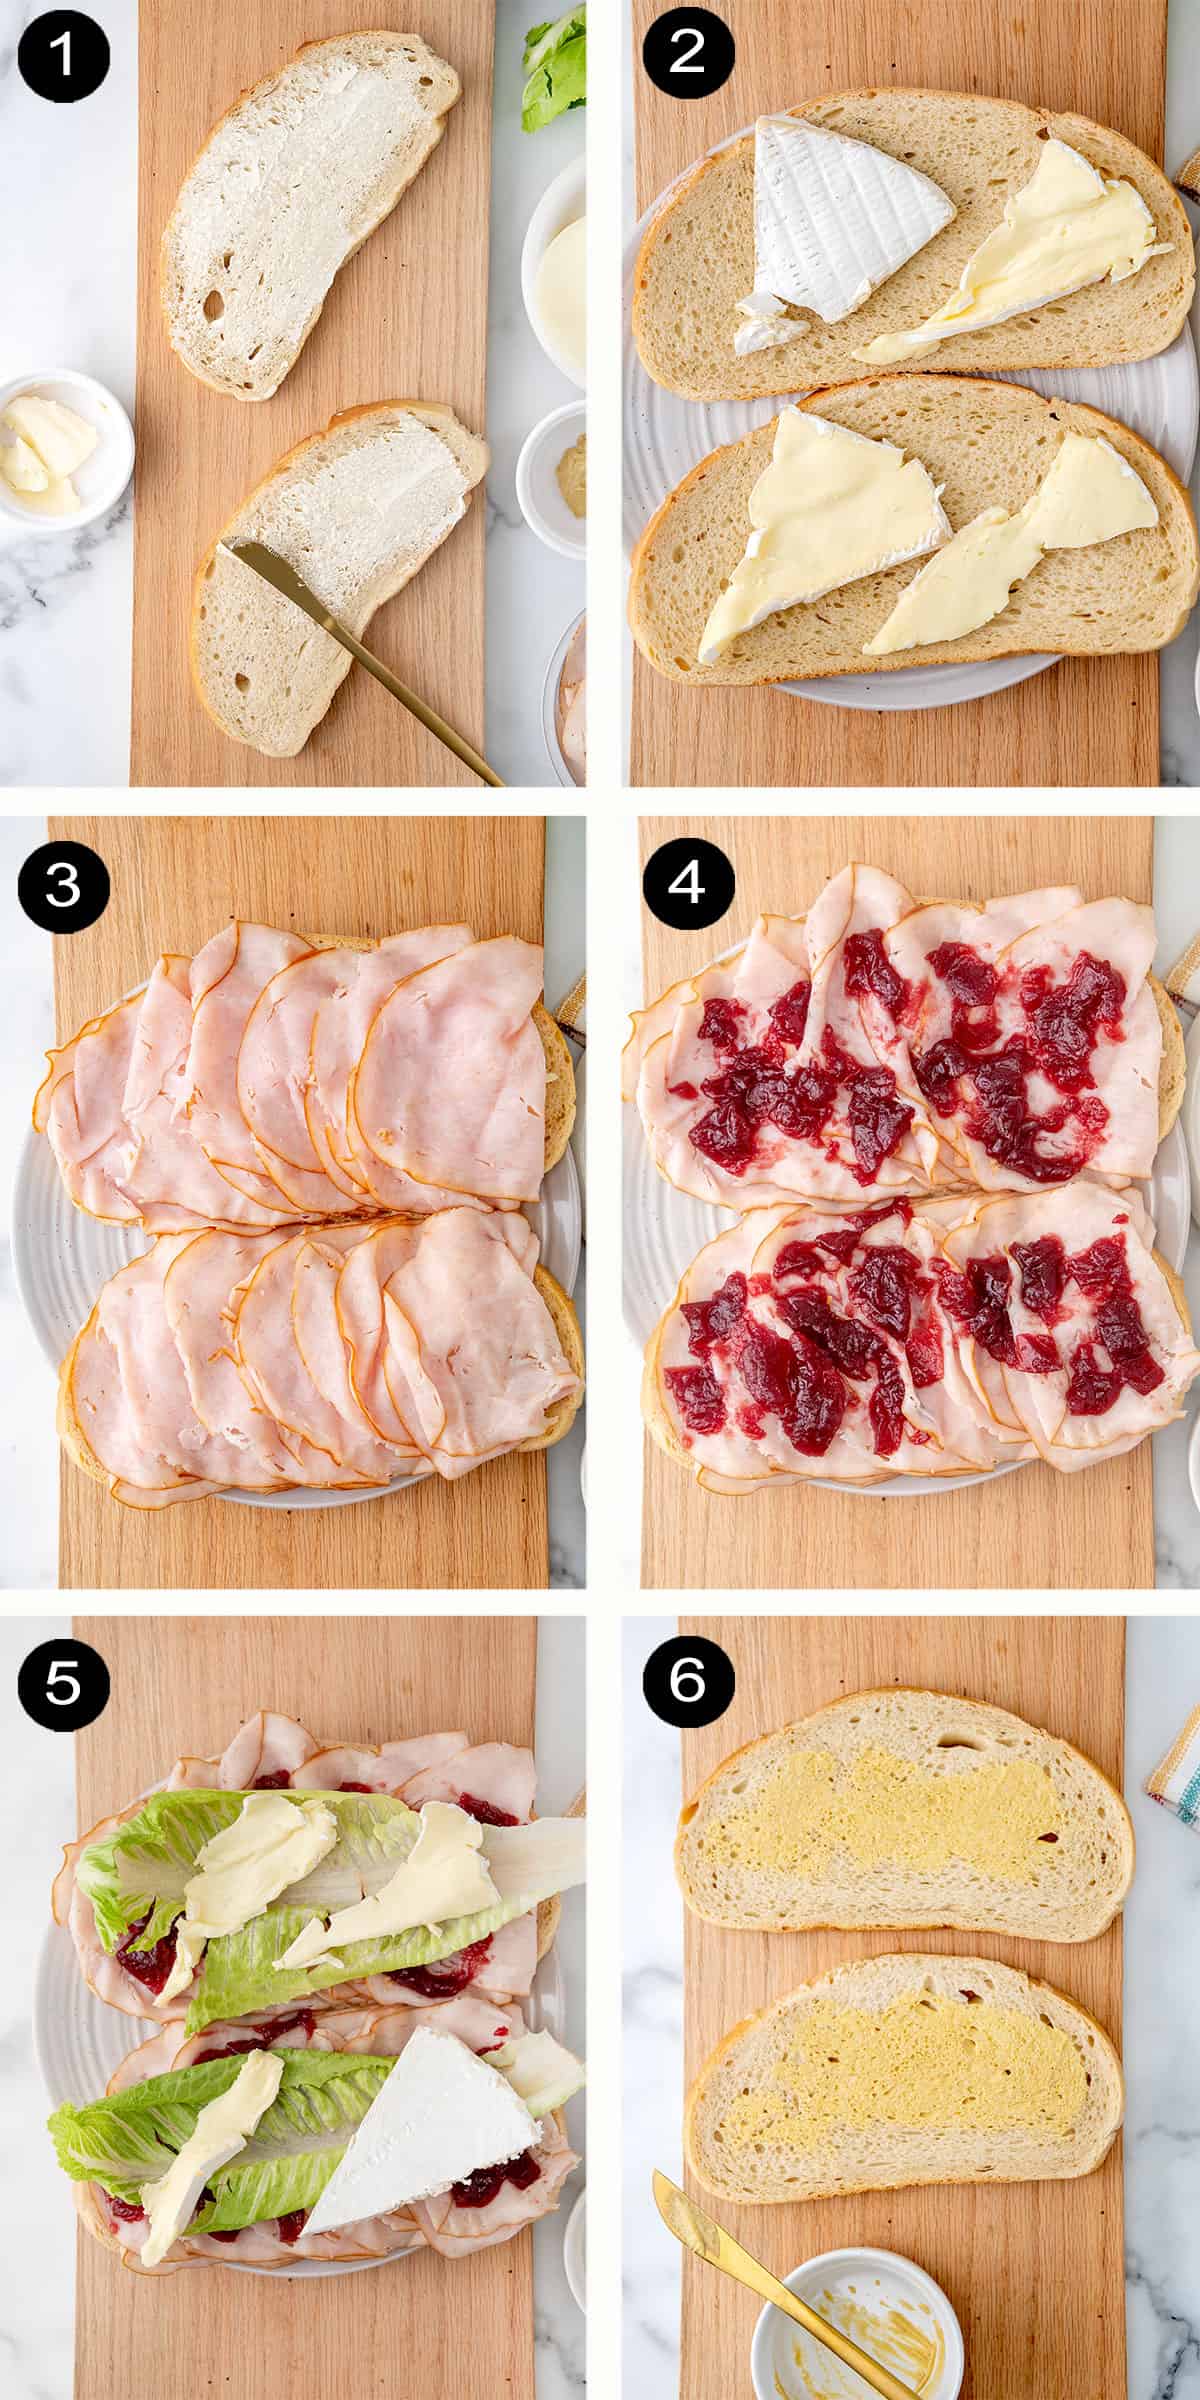 Prep steps for assembling panini sandwich recipe.